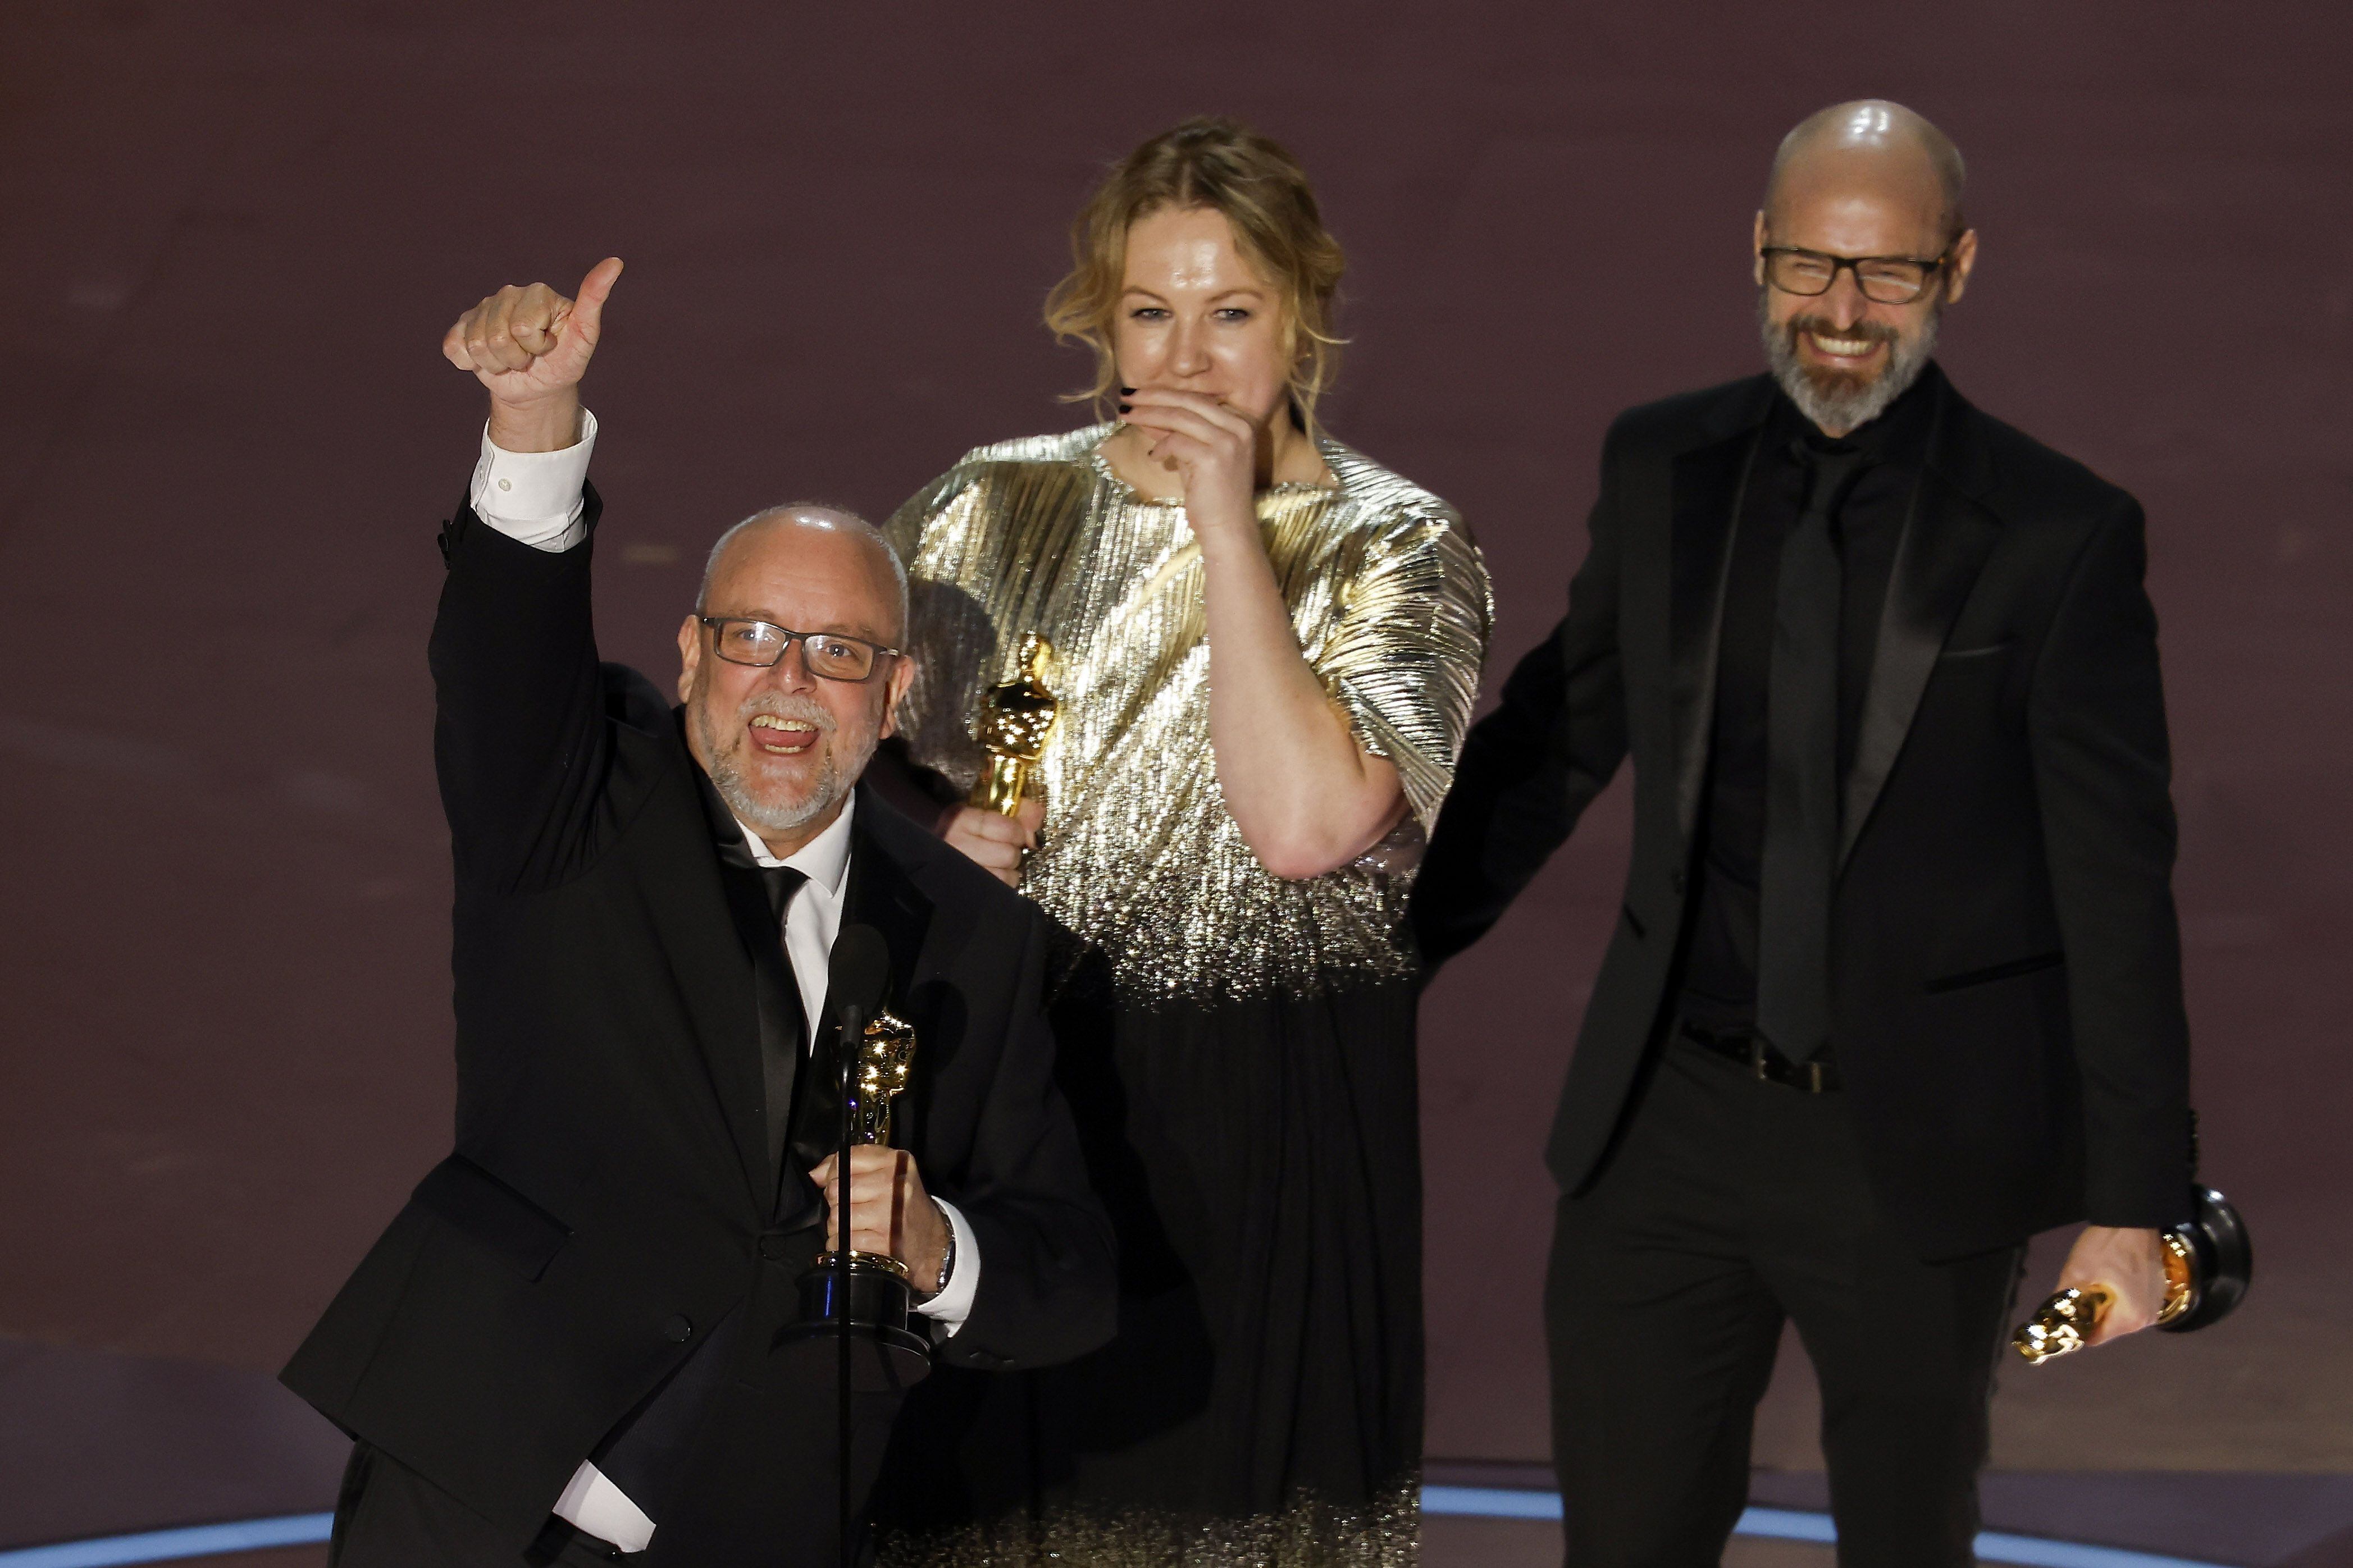 Mark Coulier, Nadia Stacey y Josh Weston en el escenario tras ganar el Óscar a mejor maquillaje y peluquería (EFE/ Caroline Brehman)
